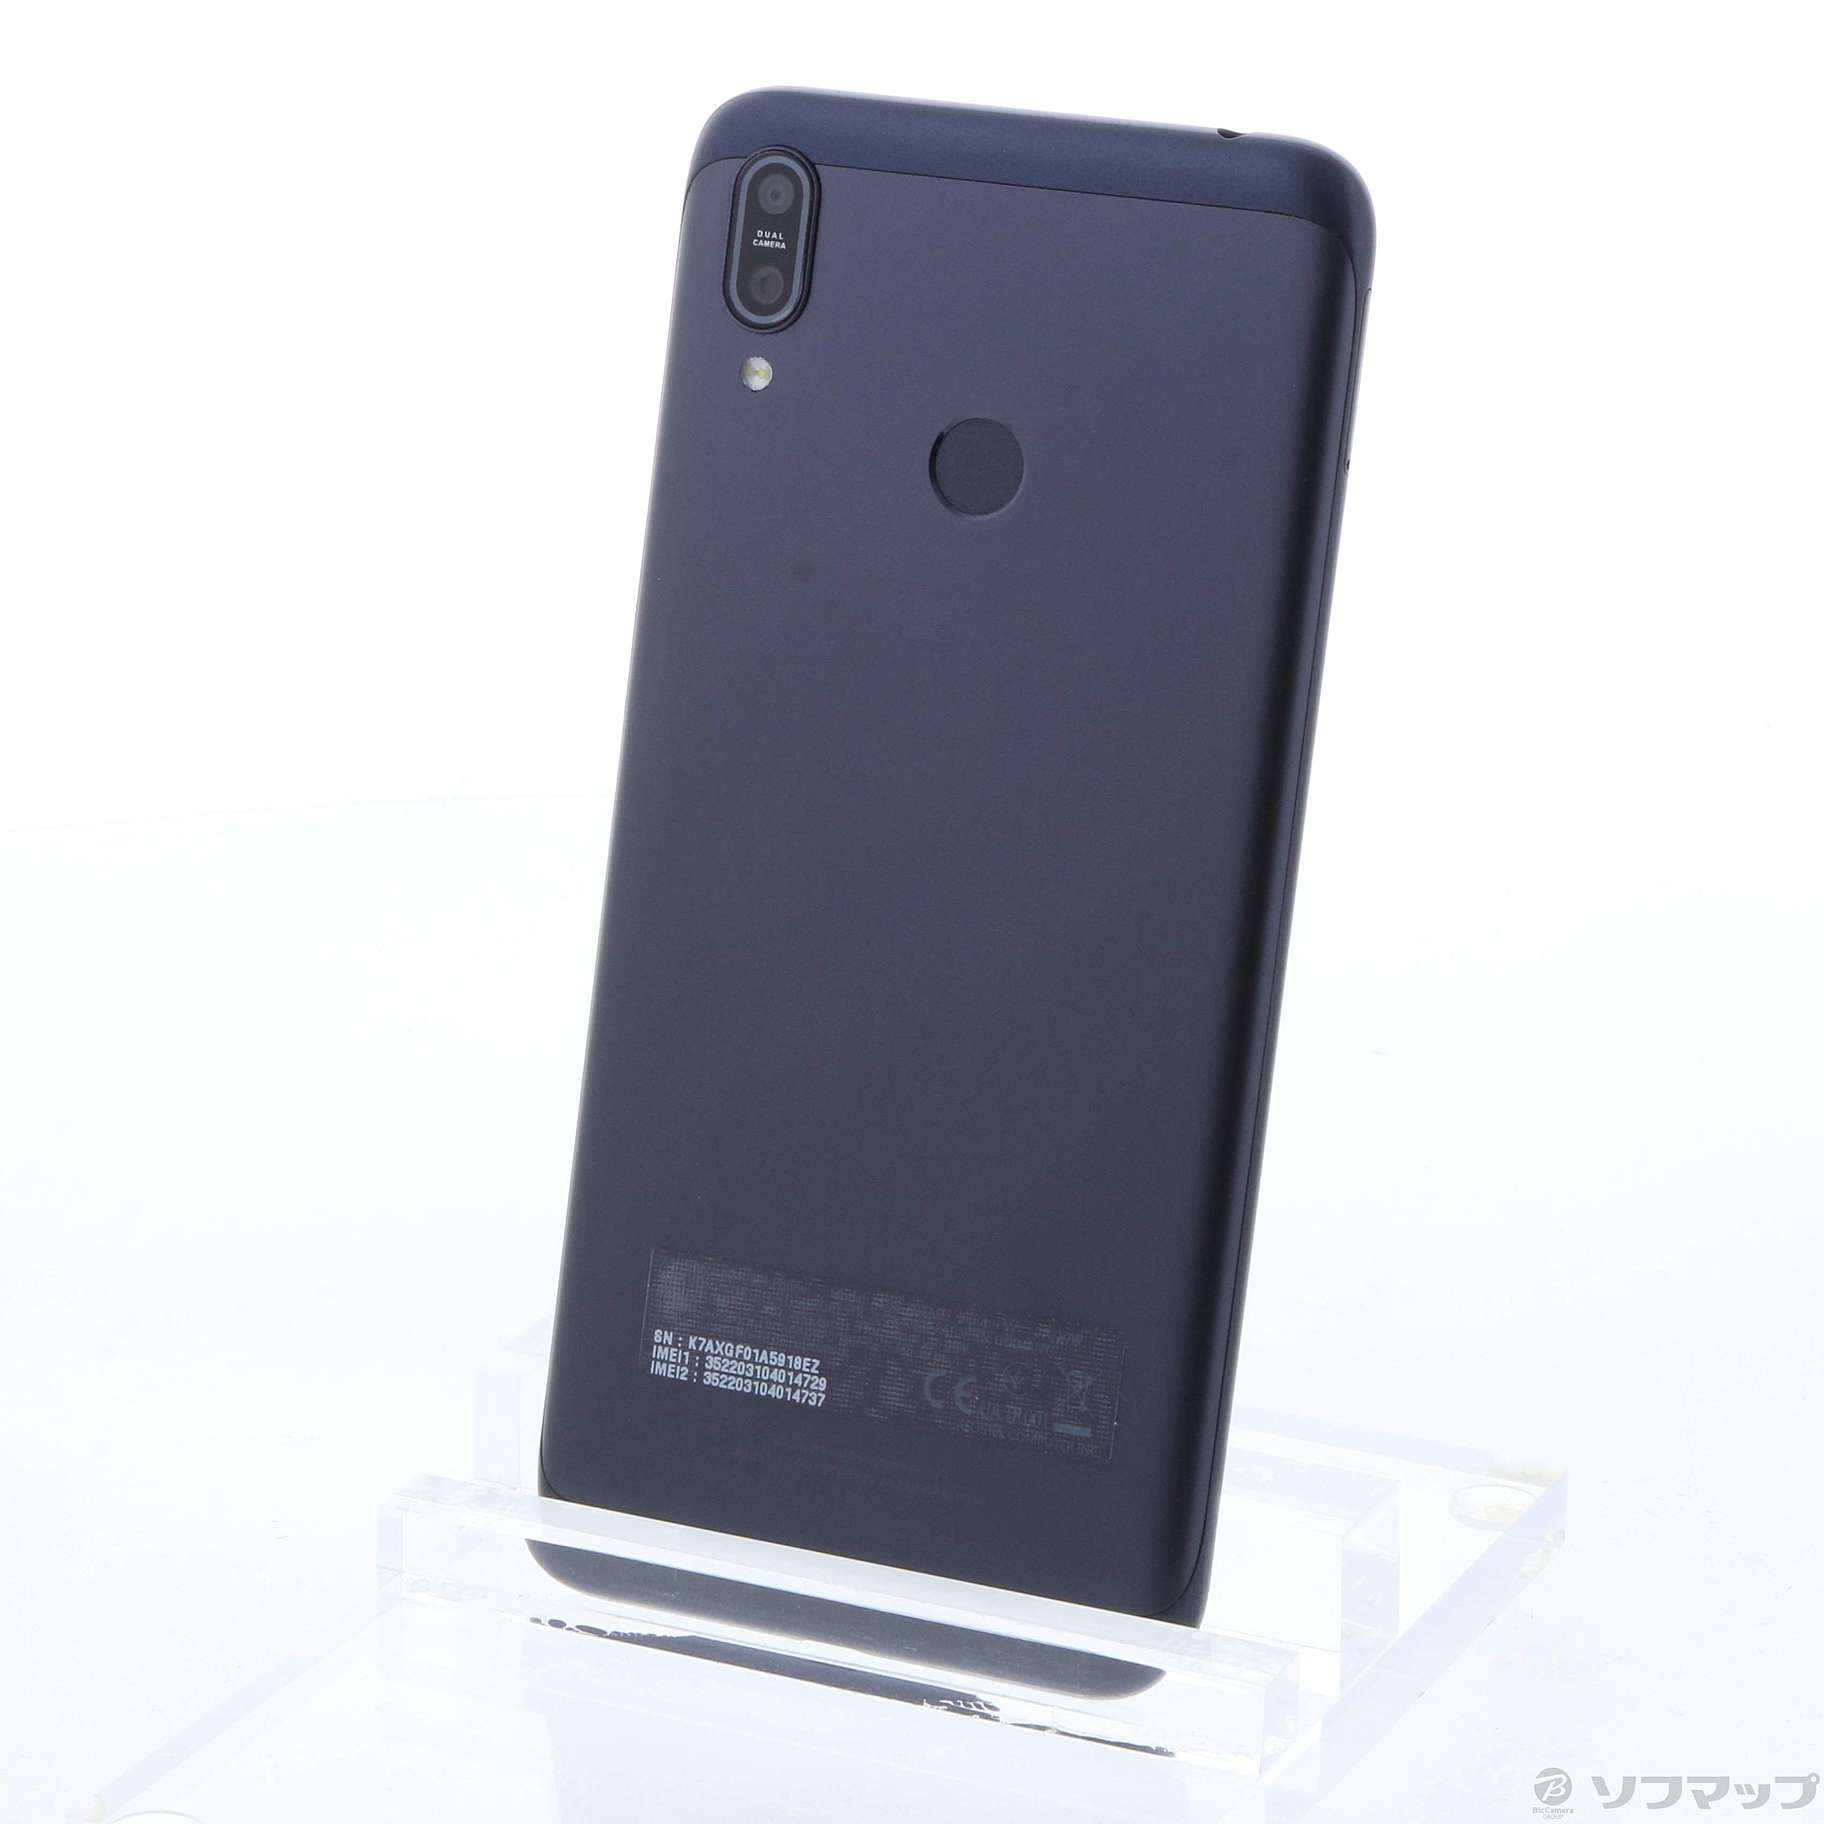 中古】ZenFone Max M2 32GB ミッドナイトブラック ZB633KL-BK32S4 SIM